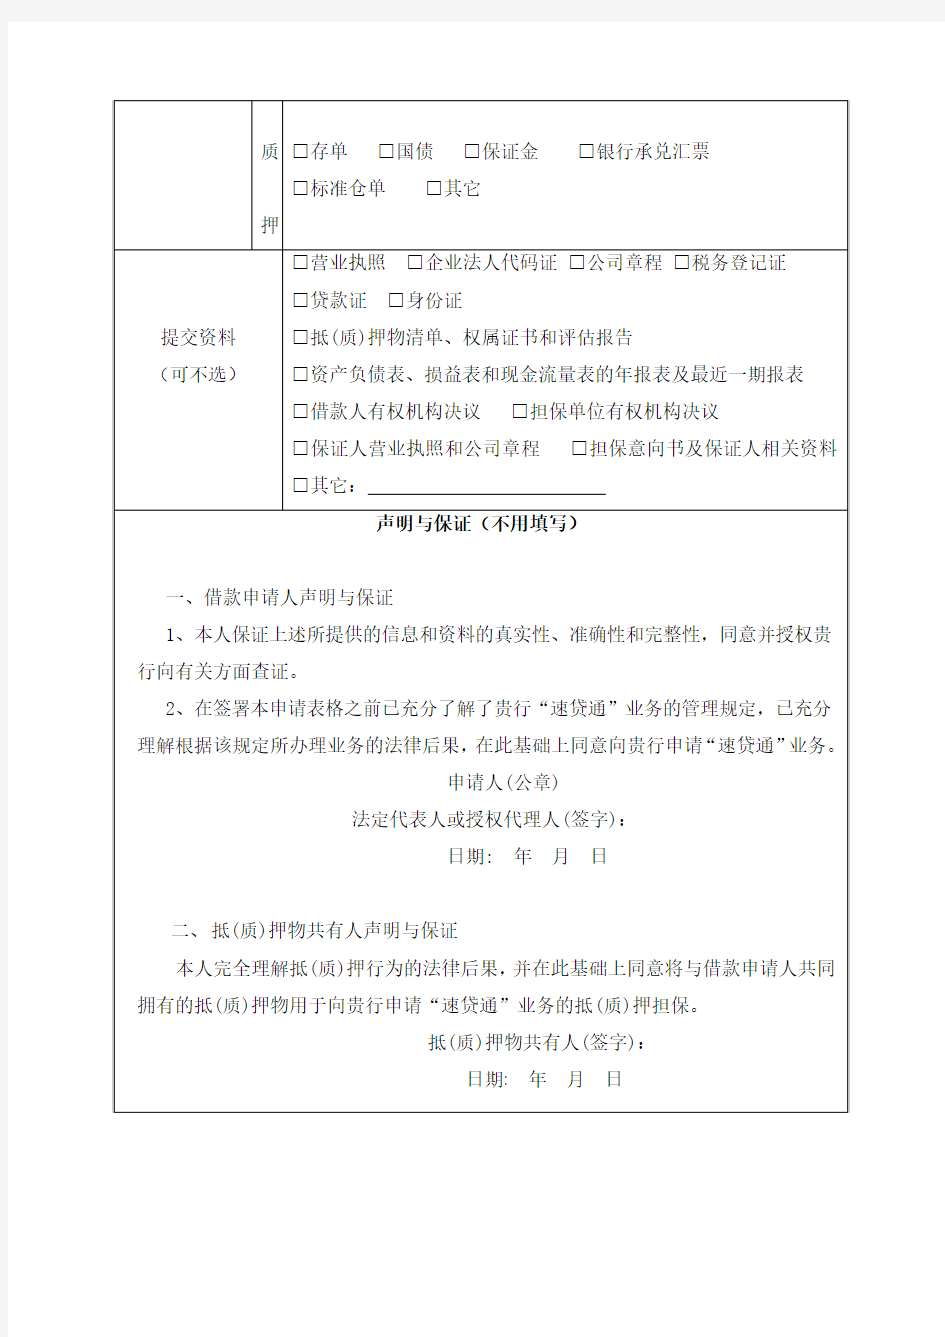 中国建设银行企业信贷业务申请表